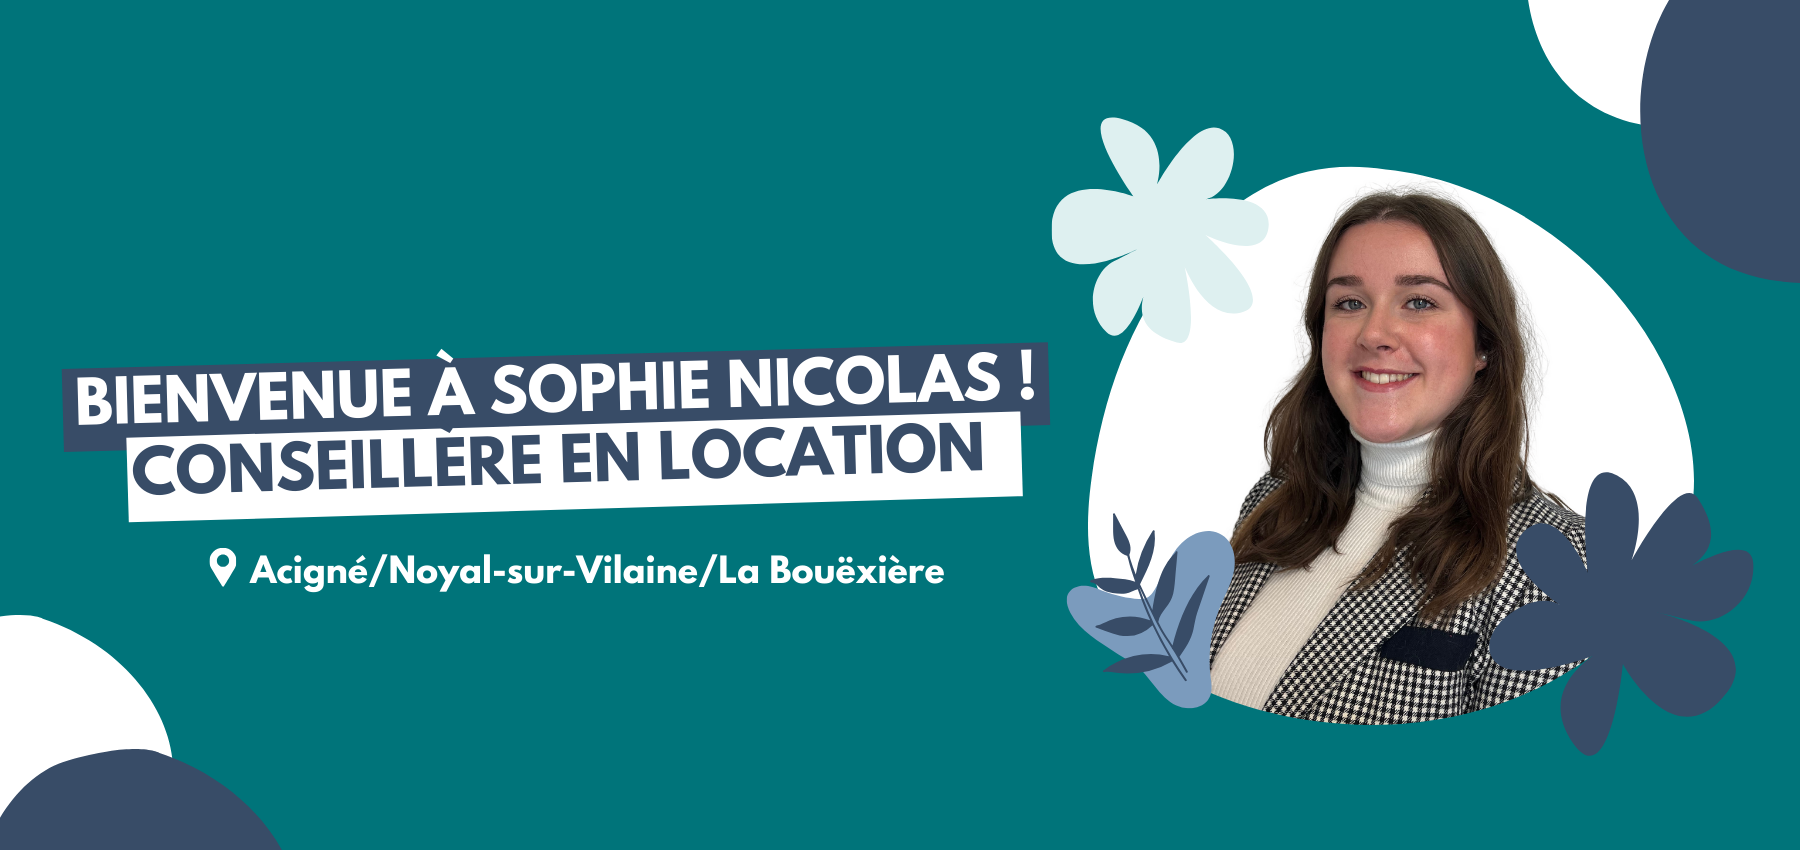 Bienvenue à Sophie NICOLAS Conseillère en location